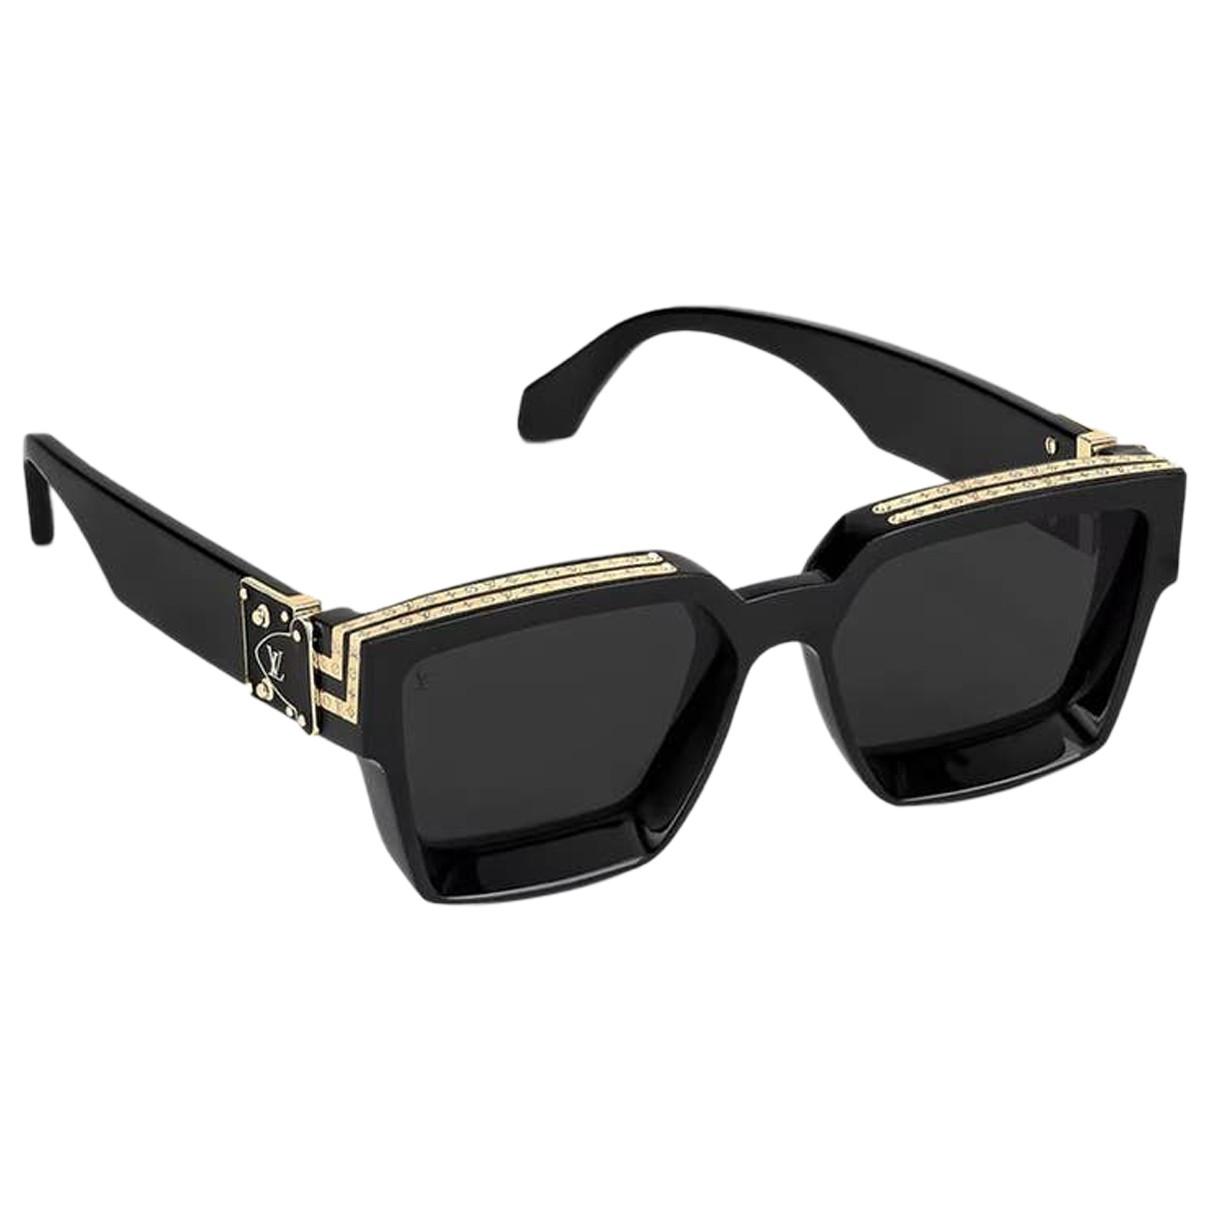 lv sunglasses for women